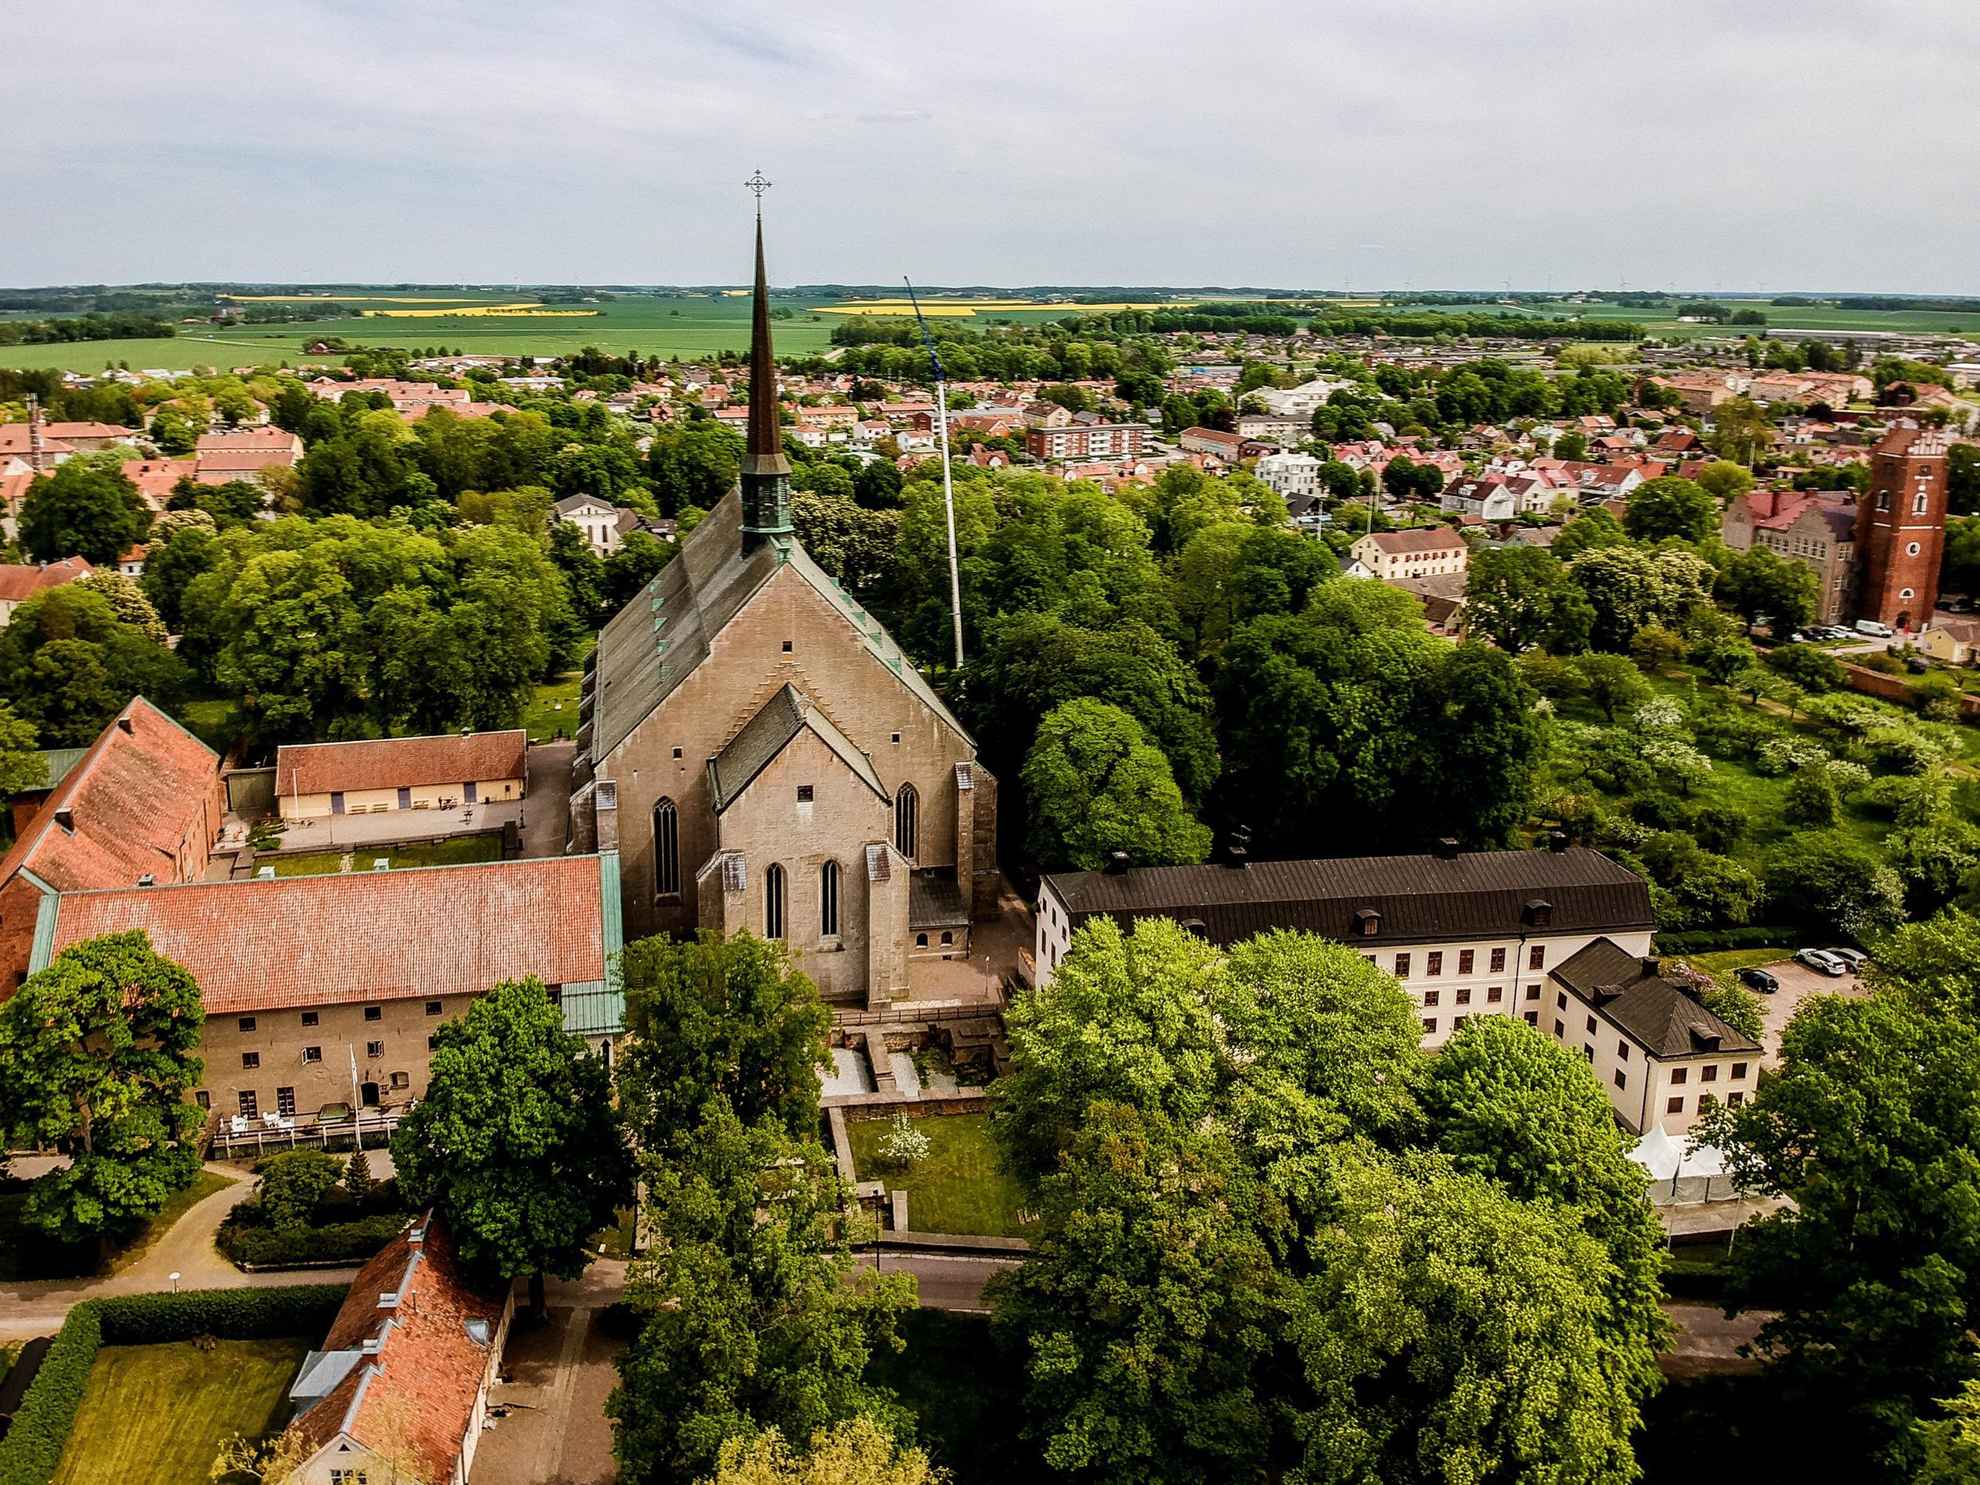 Luchtfoto van het klooster in Vadstena omgeven door groen tijdens de zomer.